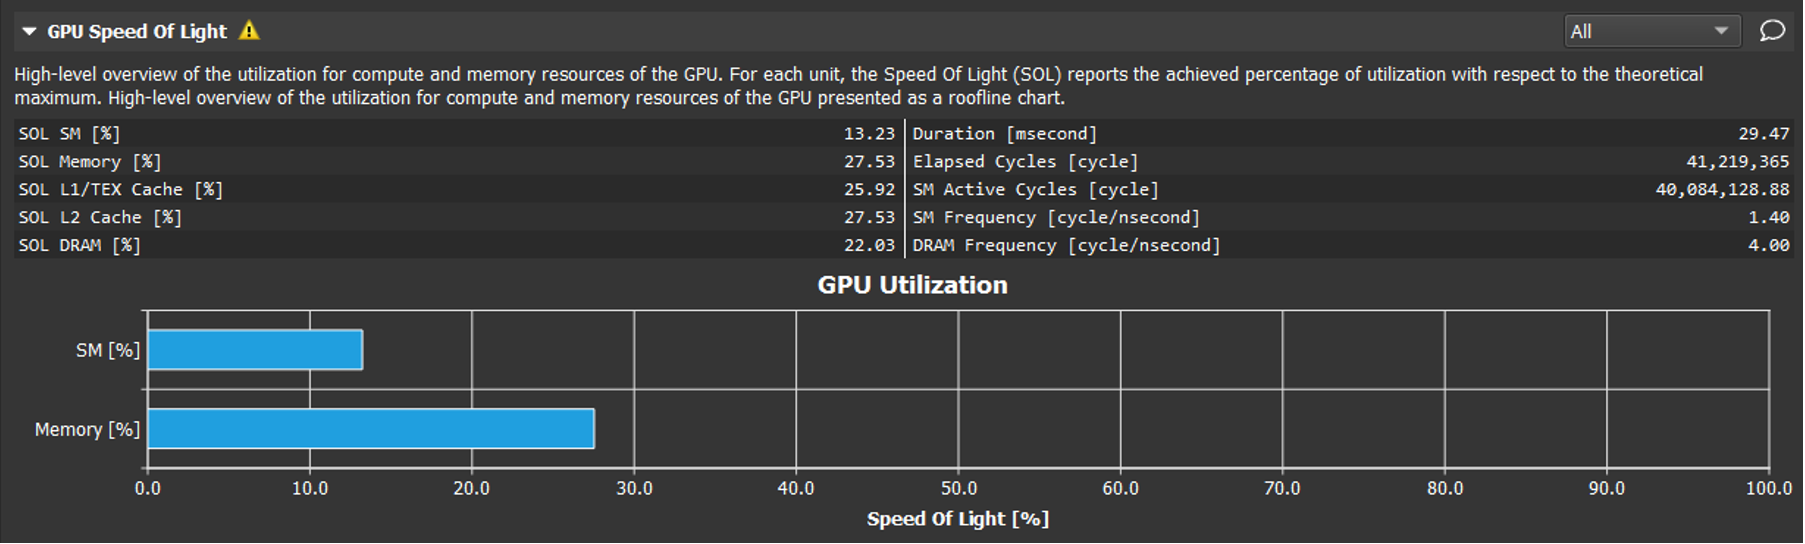 Speed of Light summary